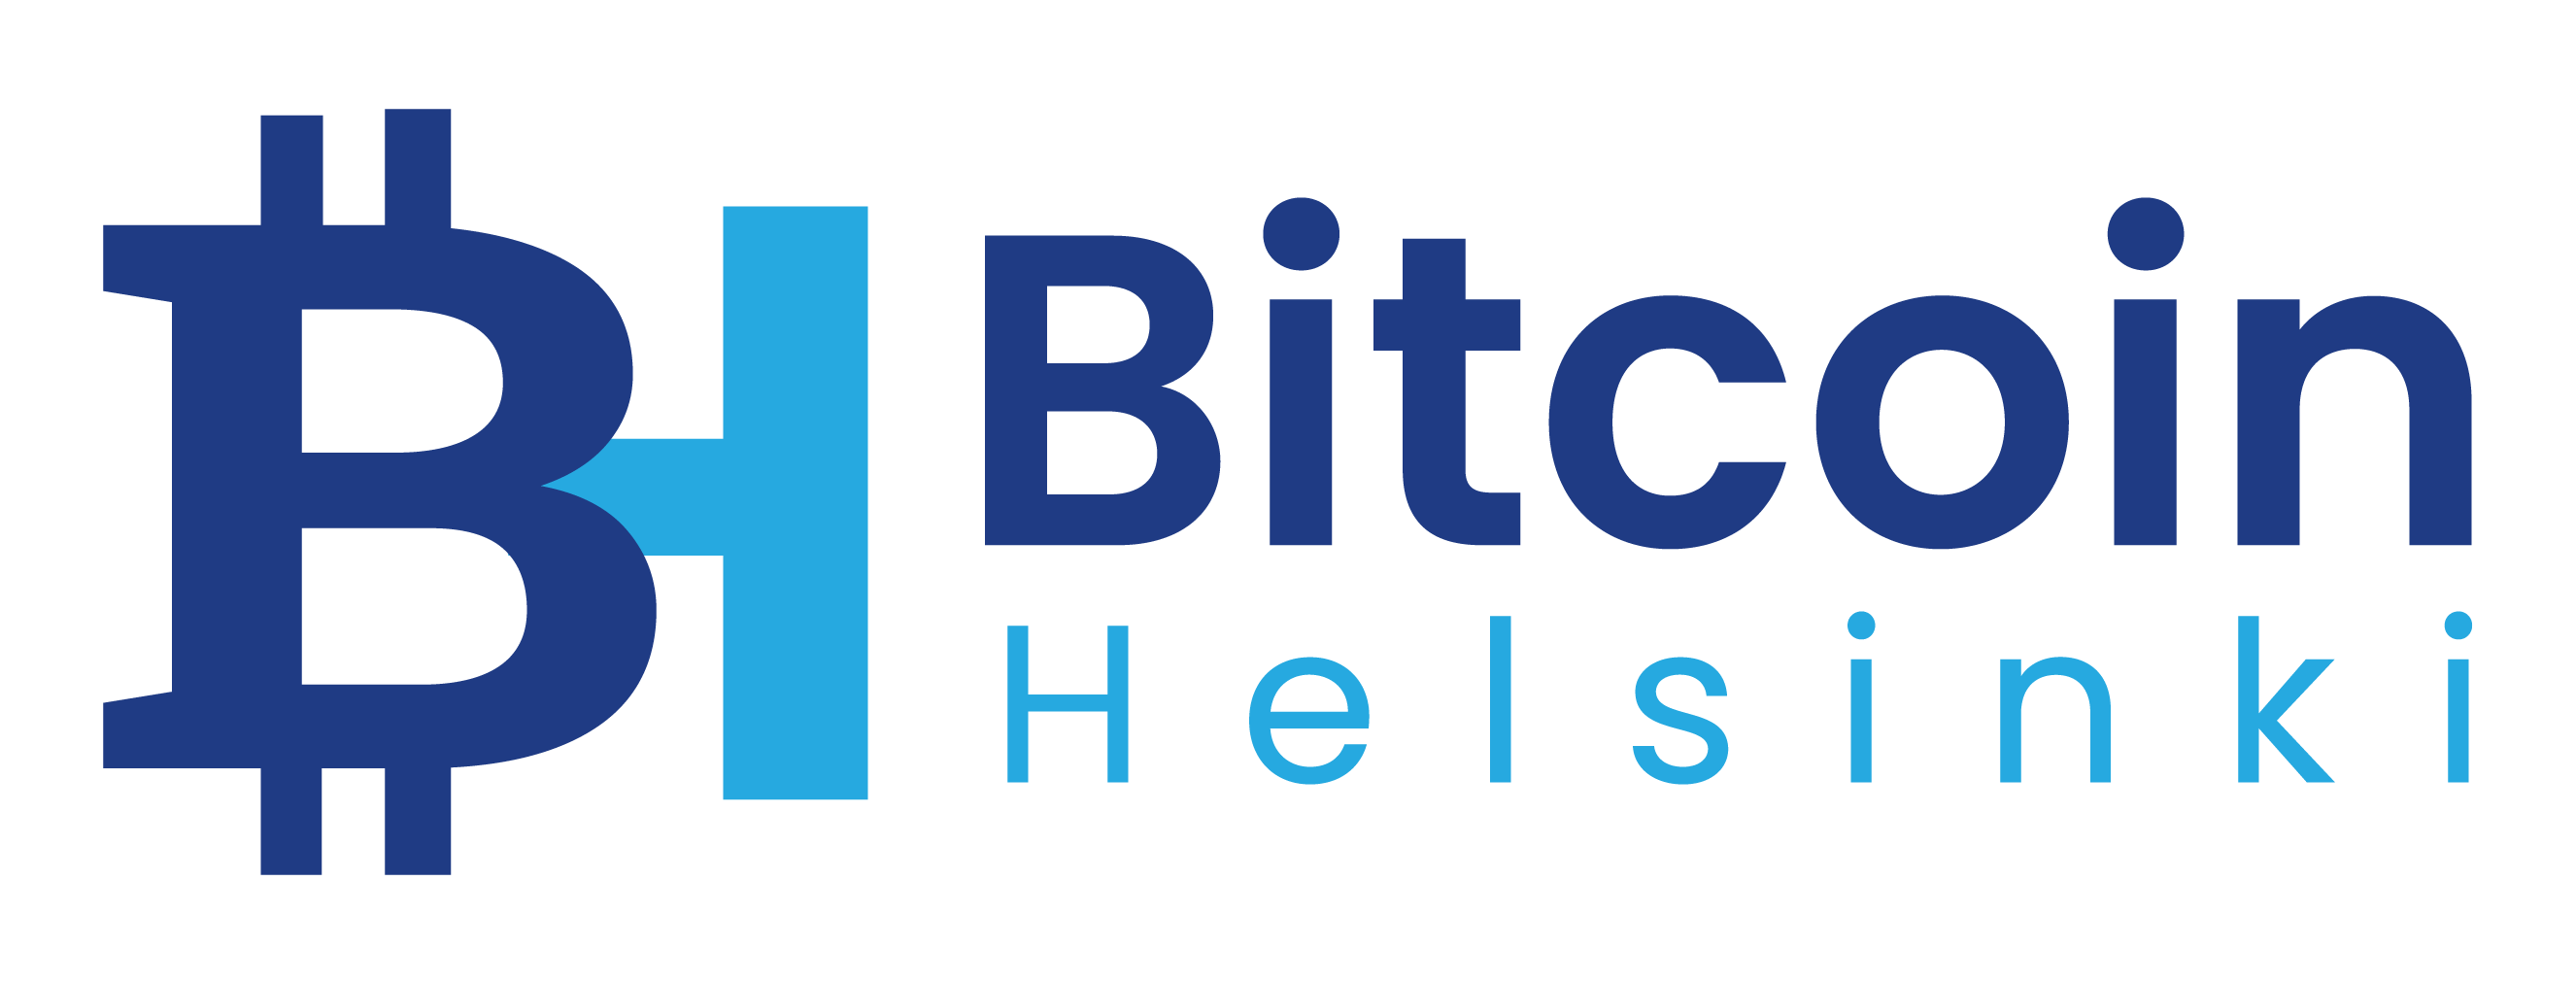 Bitcoin Helsinki - Ještě nejste součástí komunity Bitcoin Helsinki?